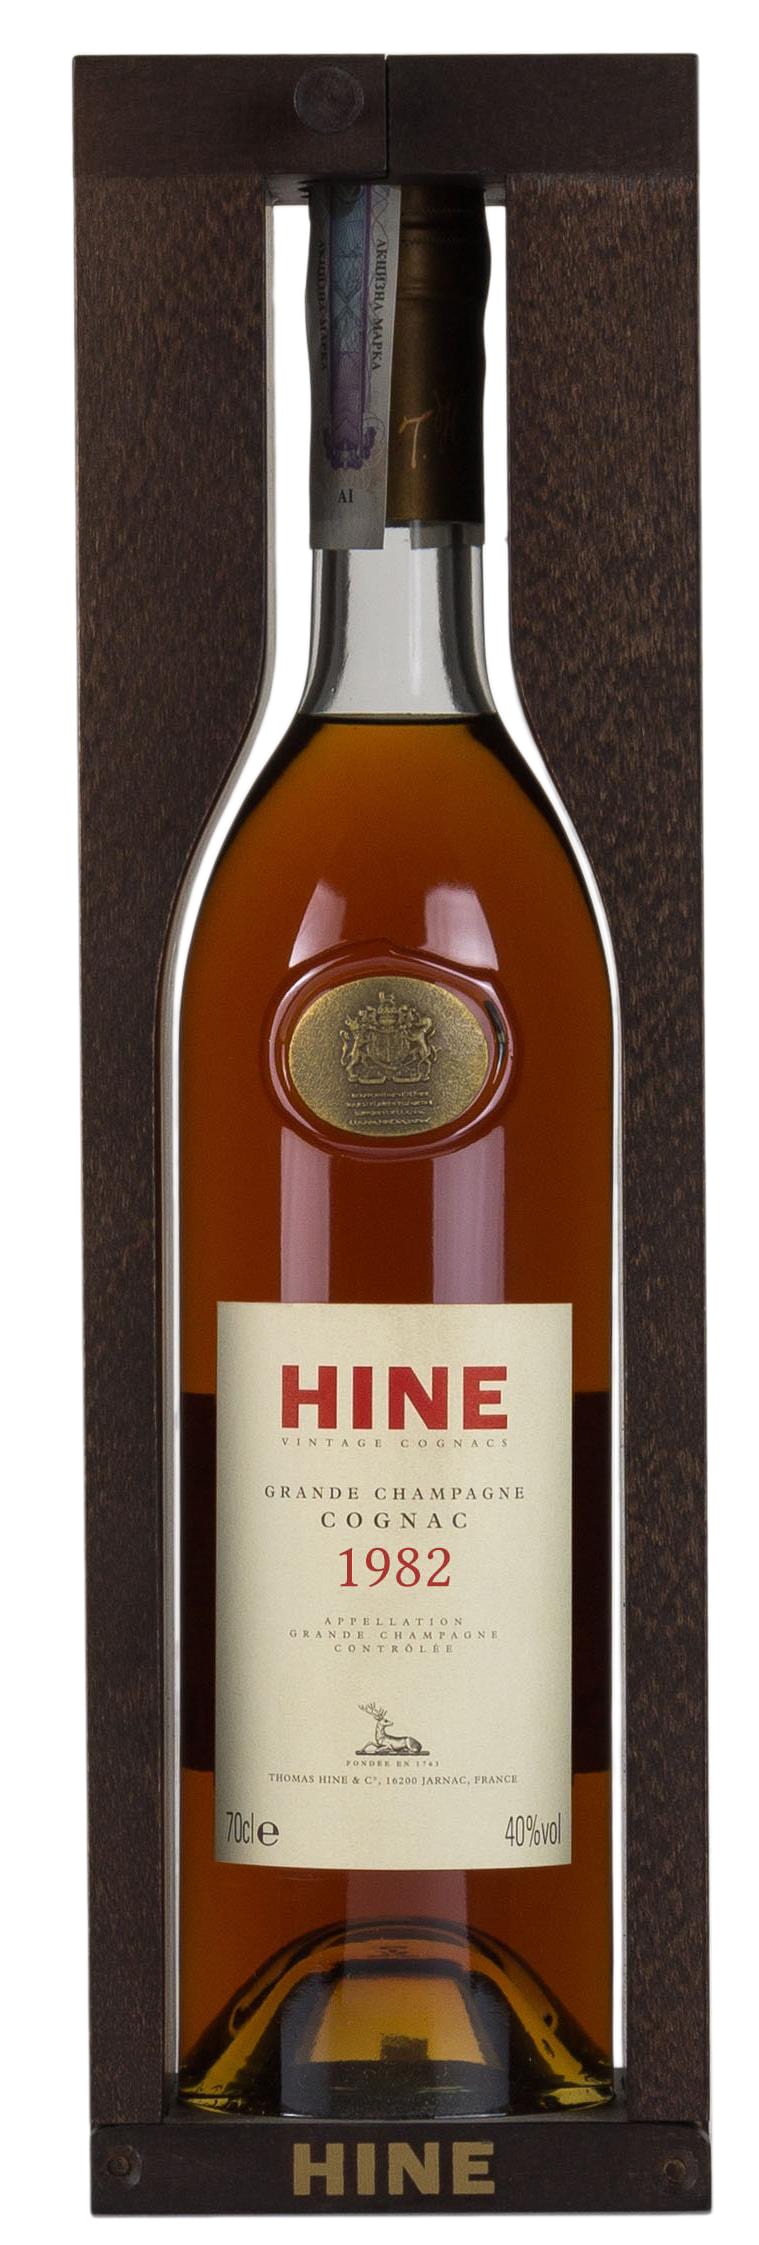 1982 Hine Vintage Cognac, Grande Champagne фото